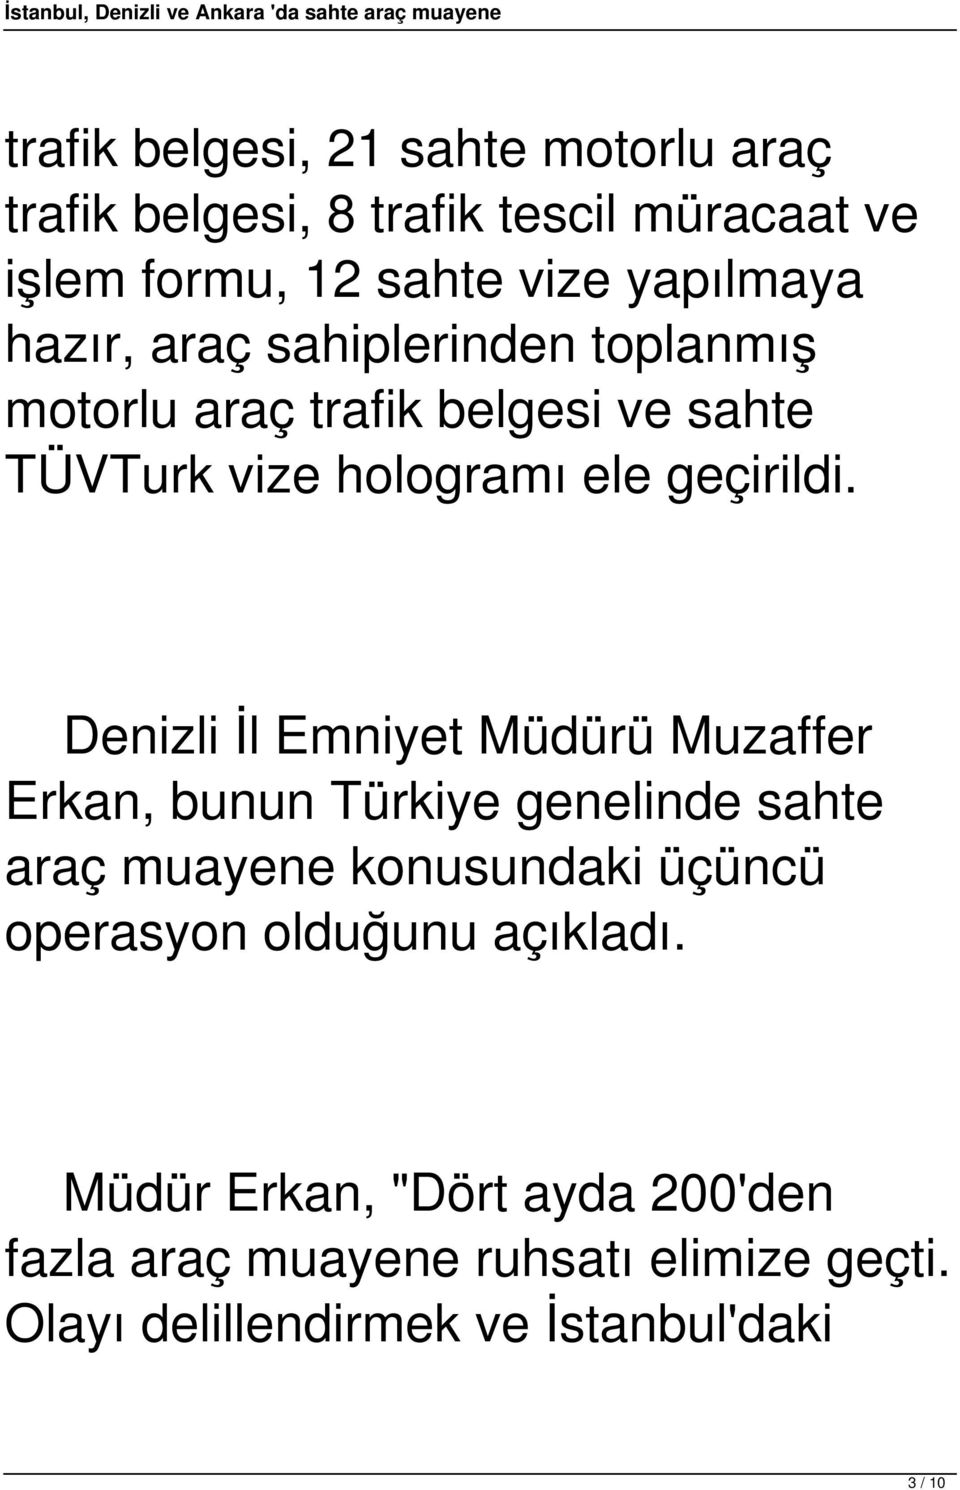 Denizli İl Emniyet Müdürü Muzaffer Erkan, bunun Türkiye genelinde sahte araç muayene konusundaki üçüncü operasyon